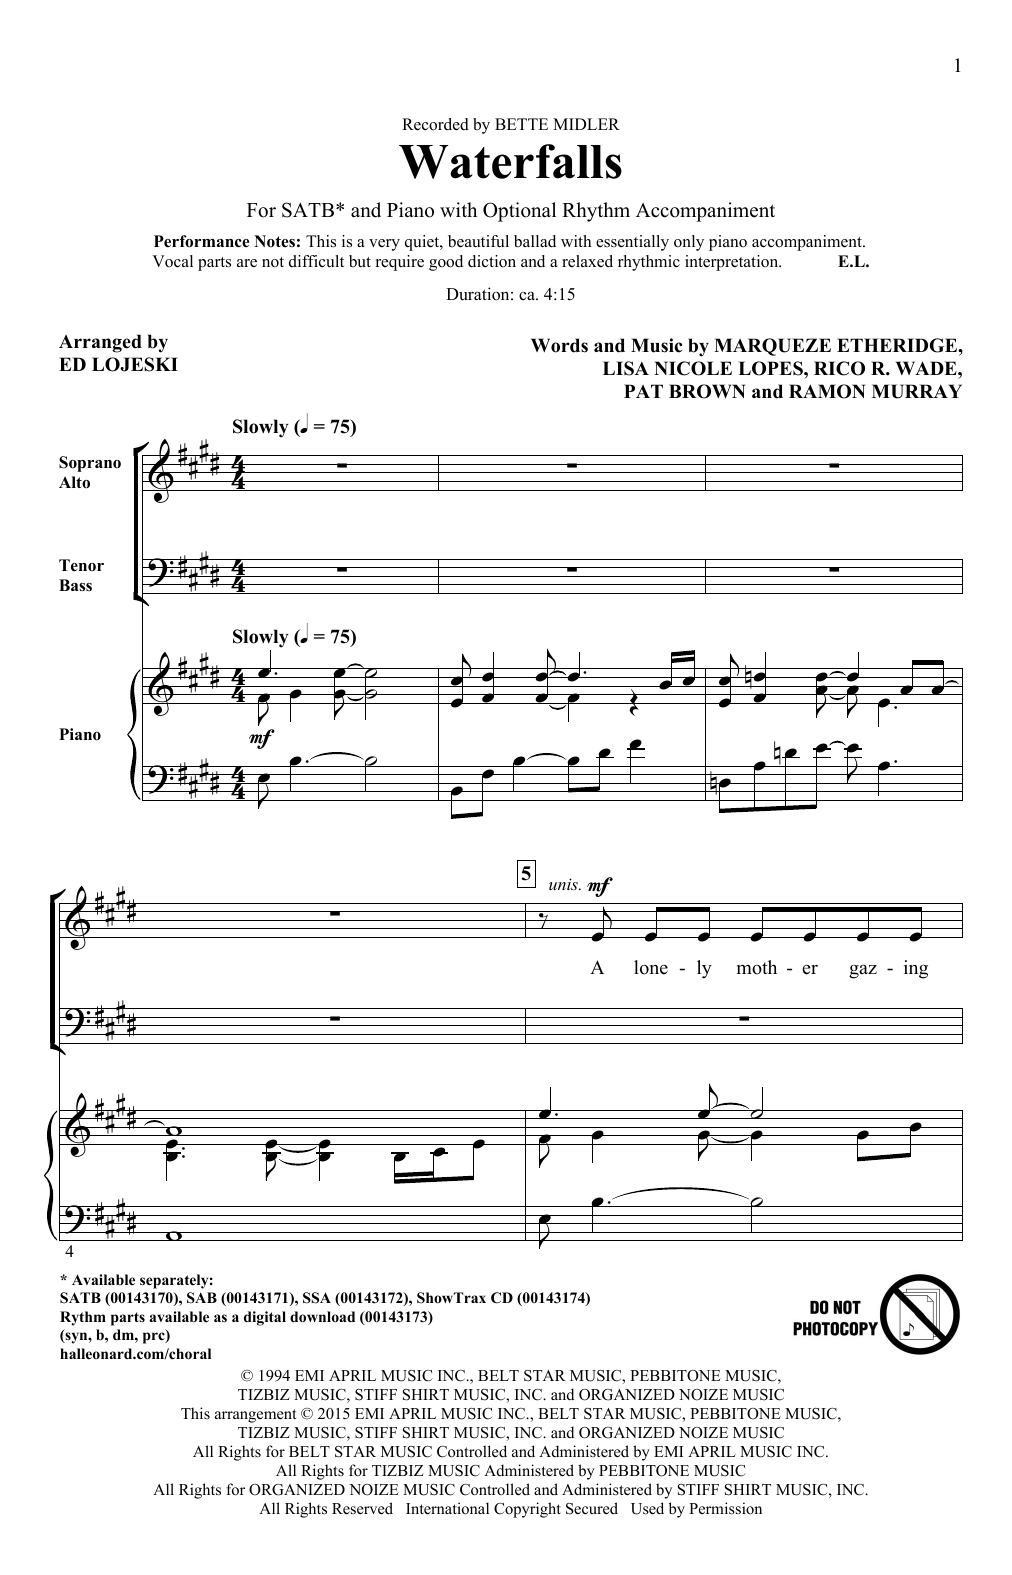 Ed Lojeski Waterfalls Sheet Music Notes & Chords for SSA - Download or Print PDF